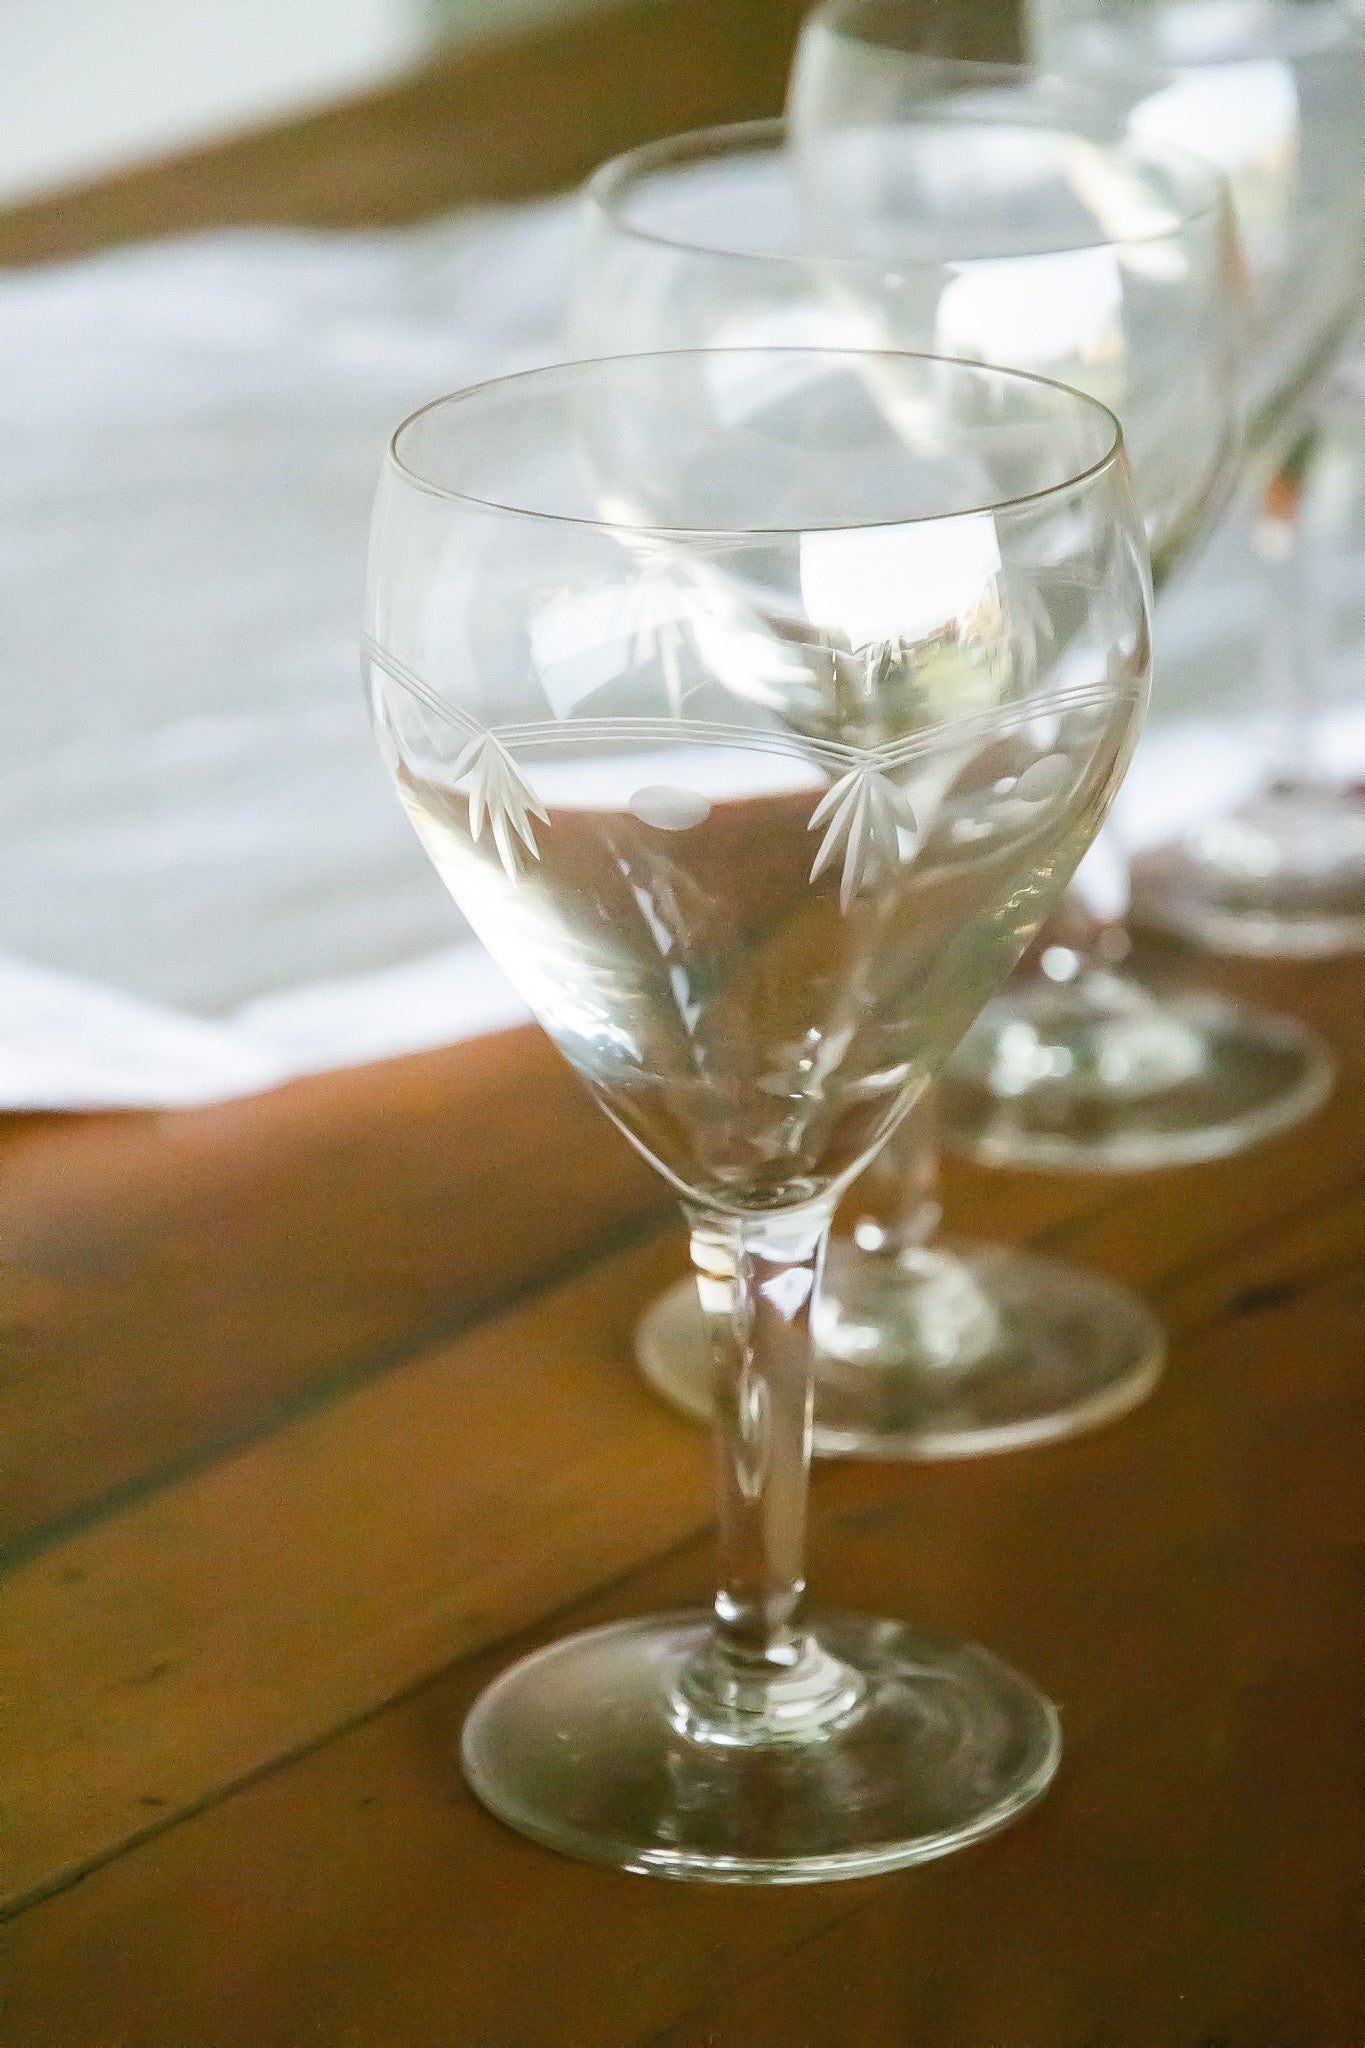 4 verres gravés, contenance entre le verre à eau et le verre à vin.